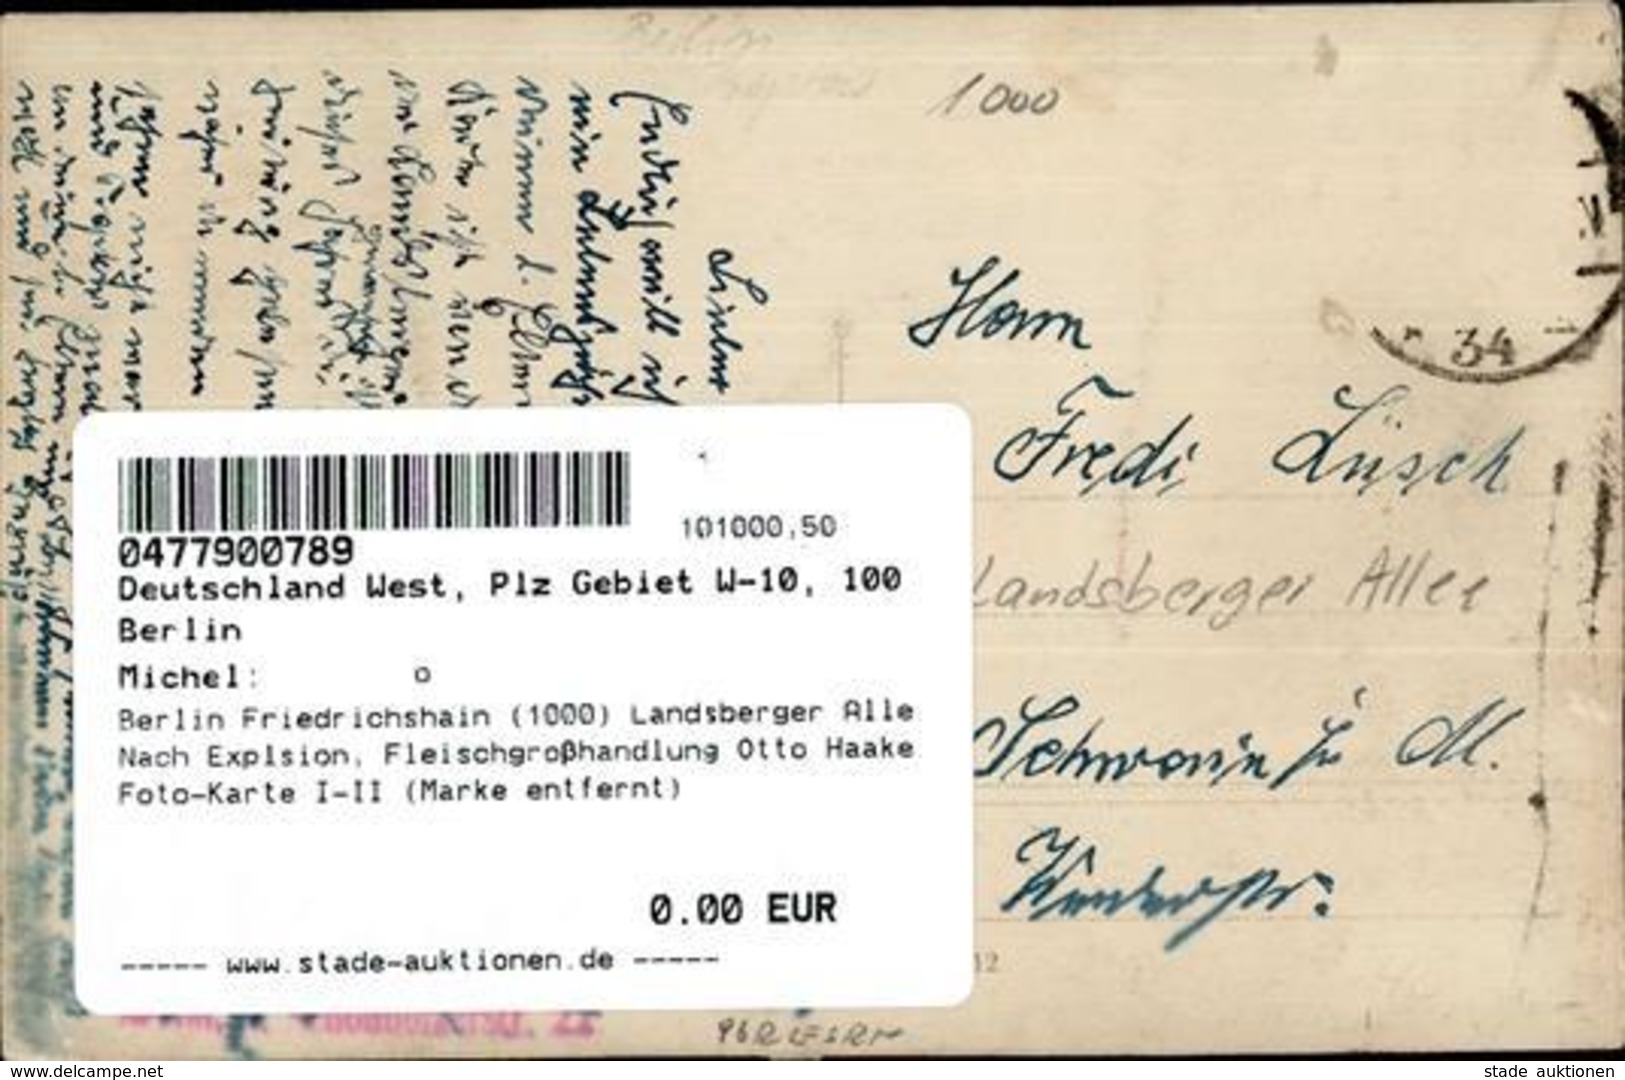 Berlin Friedrichshain (1000) Landsberger Alle Nach Explsion, Fleischgroßhandlung Otto Haake Foto-Karte I-II (Marke Entfe - Cameroon